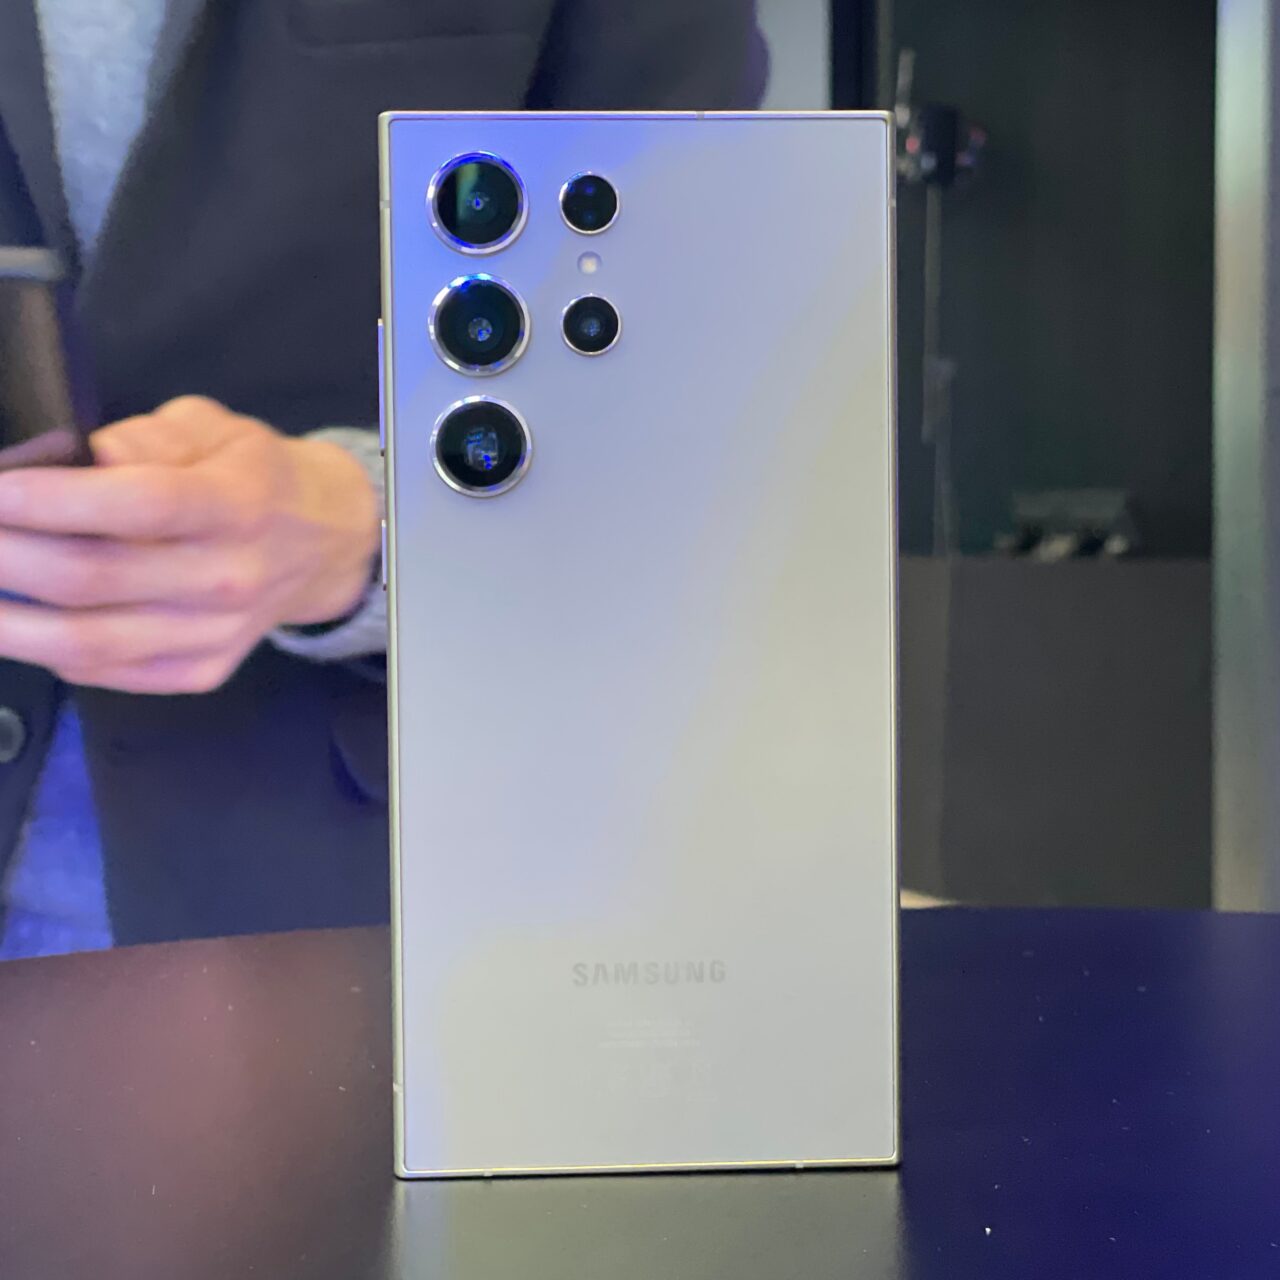 Tylny panel smartfona Samsung z pięcioma obiektywami kamery.